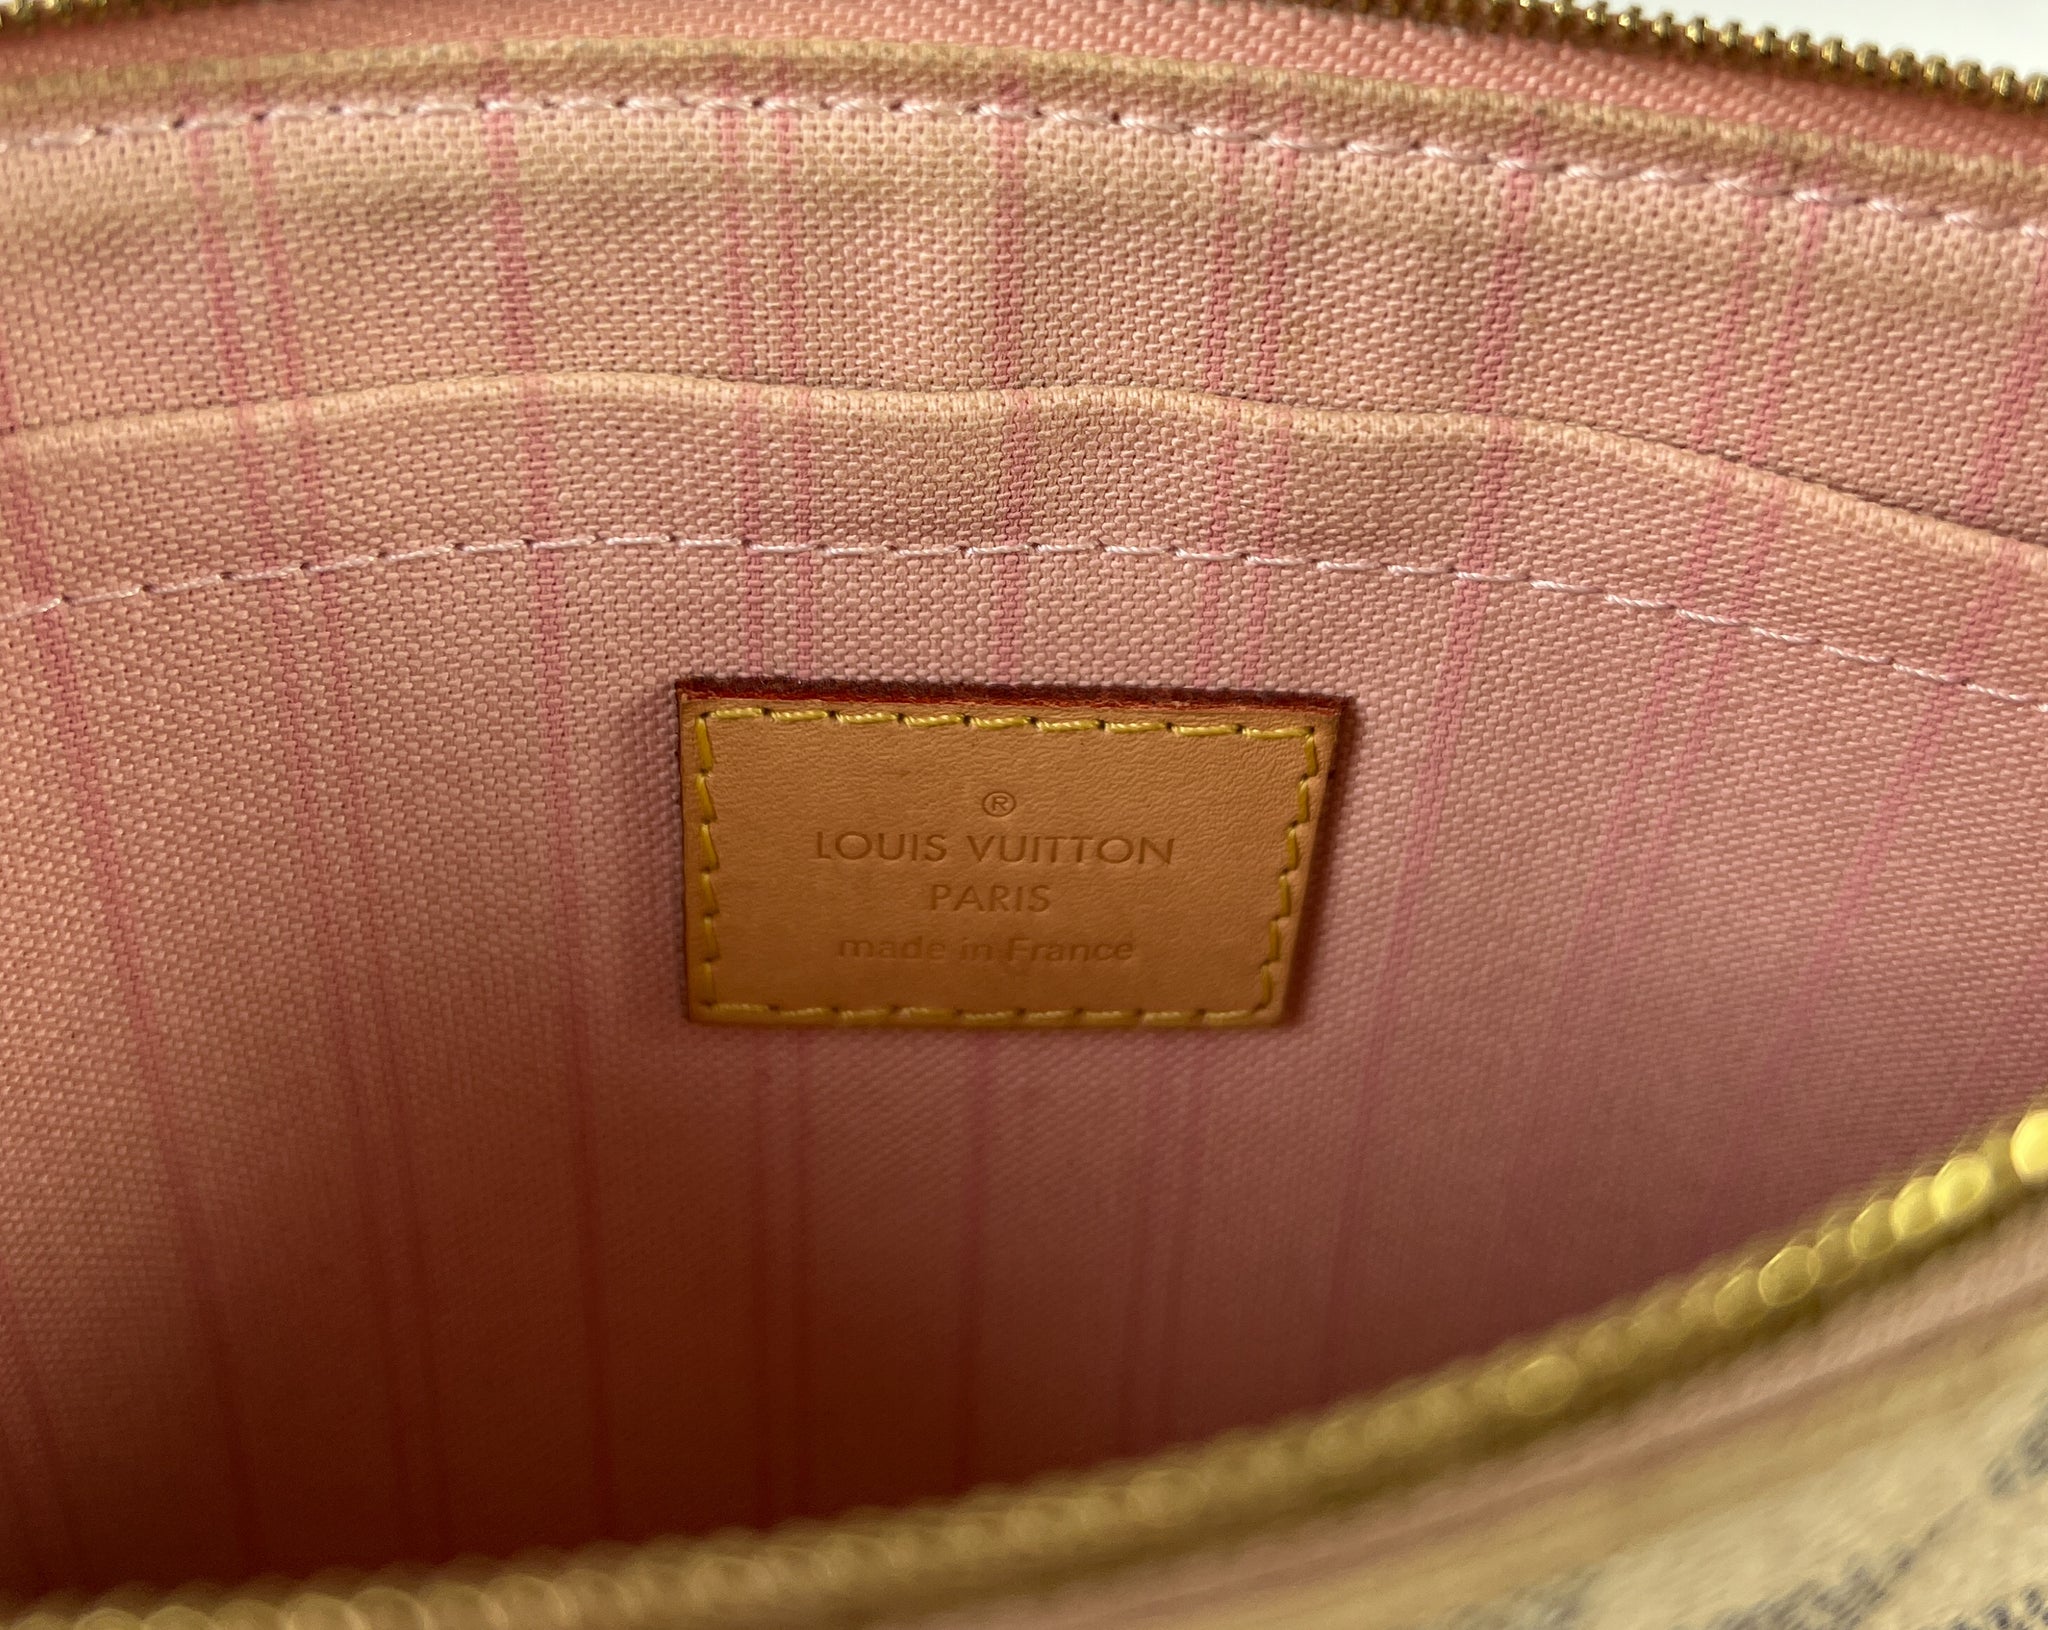 Louis Vuitton Damier Azur neverfull pouch – My Girlfriend's